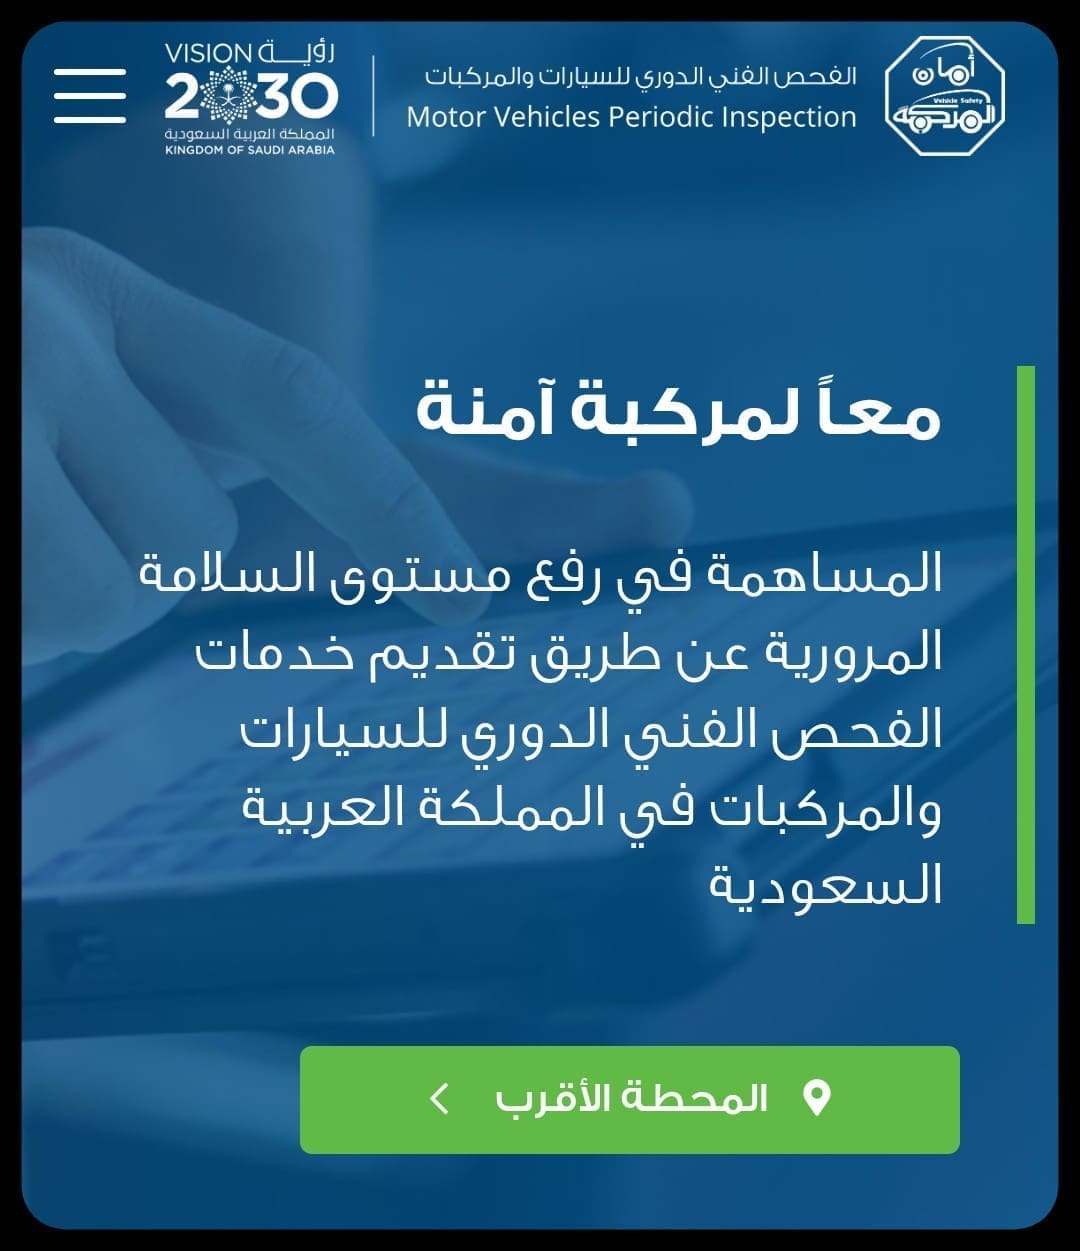 صورة من موقع الفحص الدوري للسيارات مكتوب عليها معا لمركبة آمنة‌‌_ مصدر الصورة: الموقع الرسمي لفحص المركبات بالسعودية